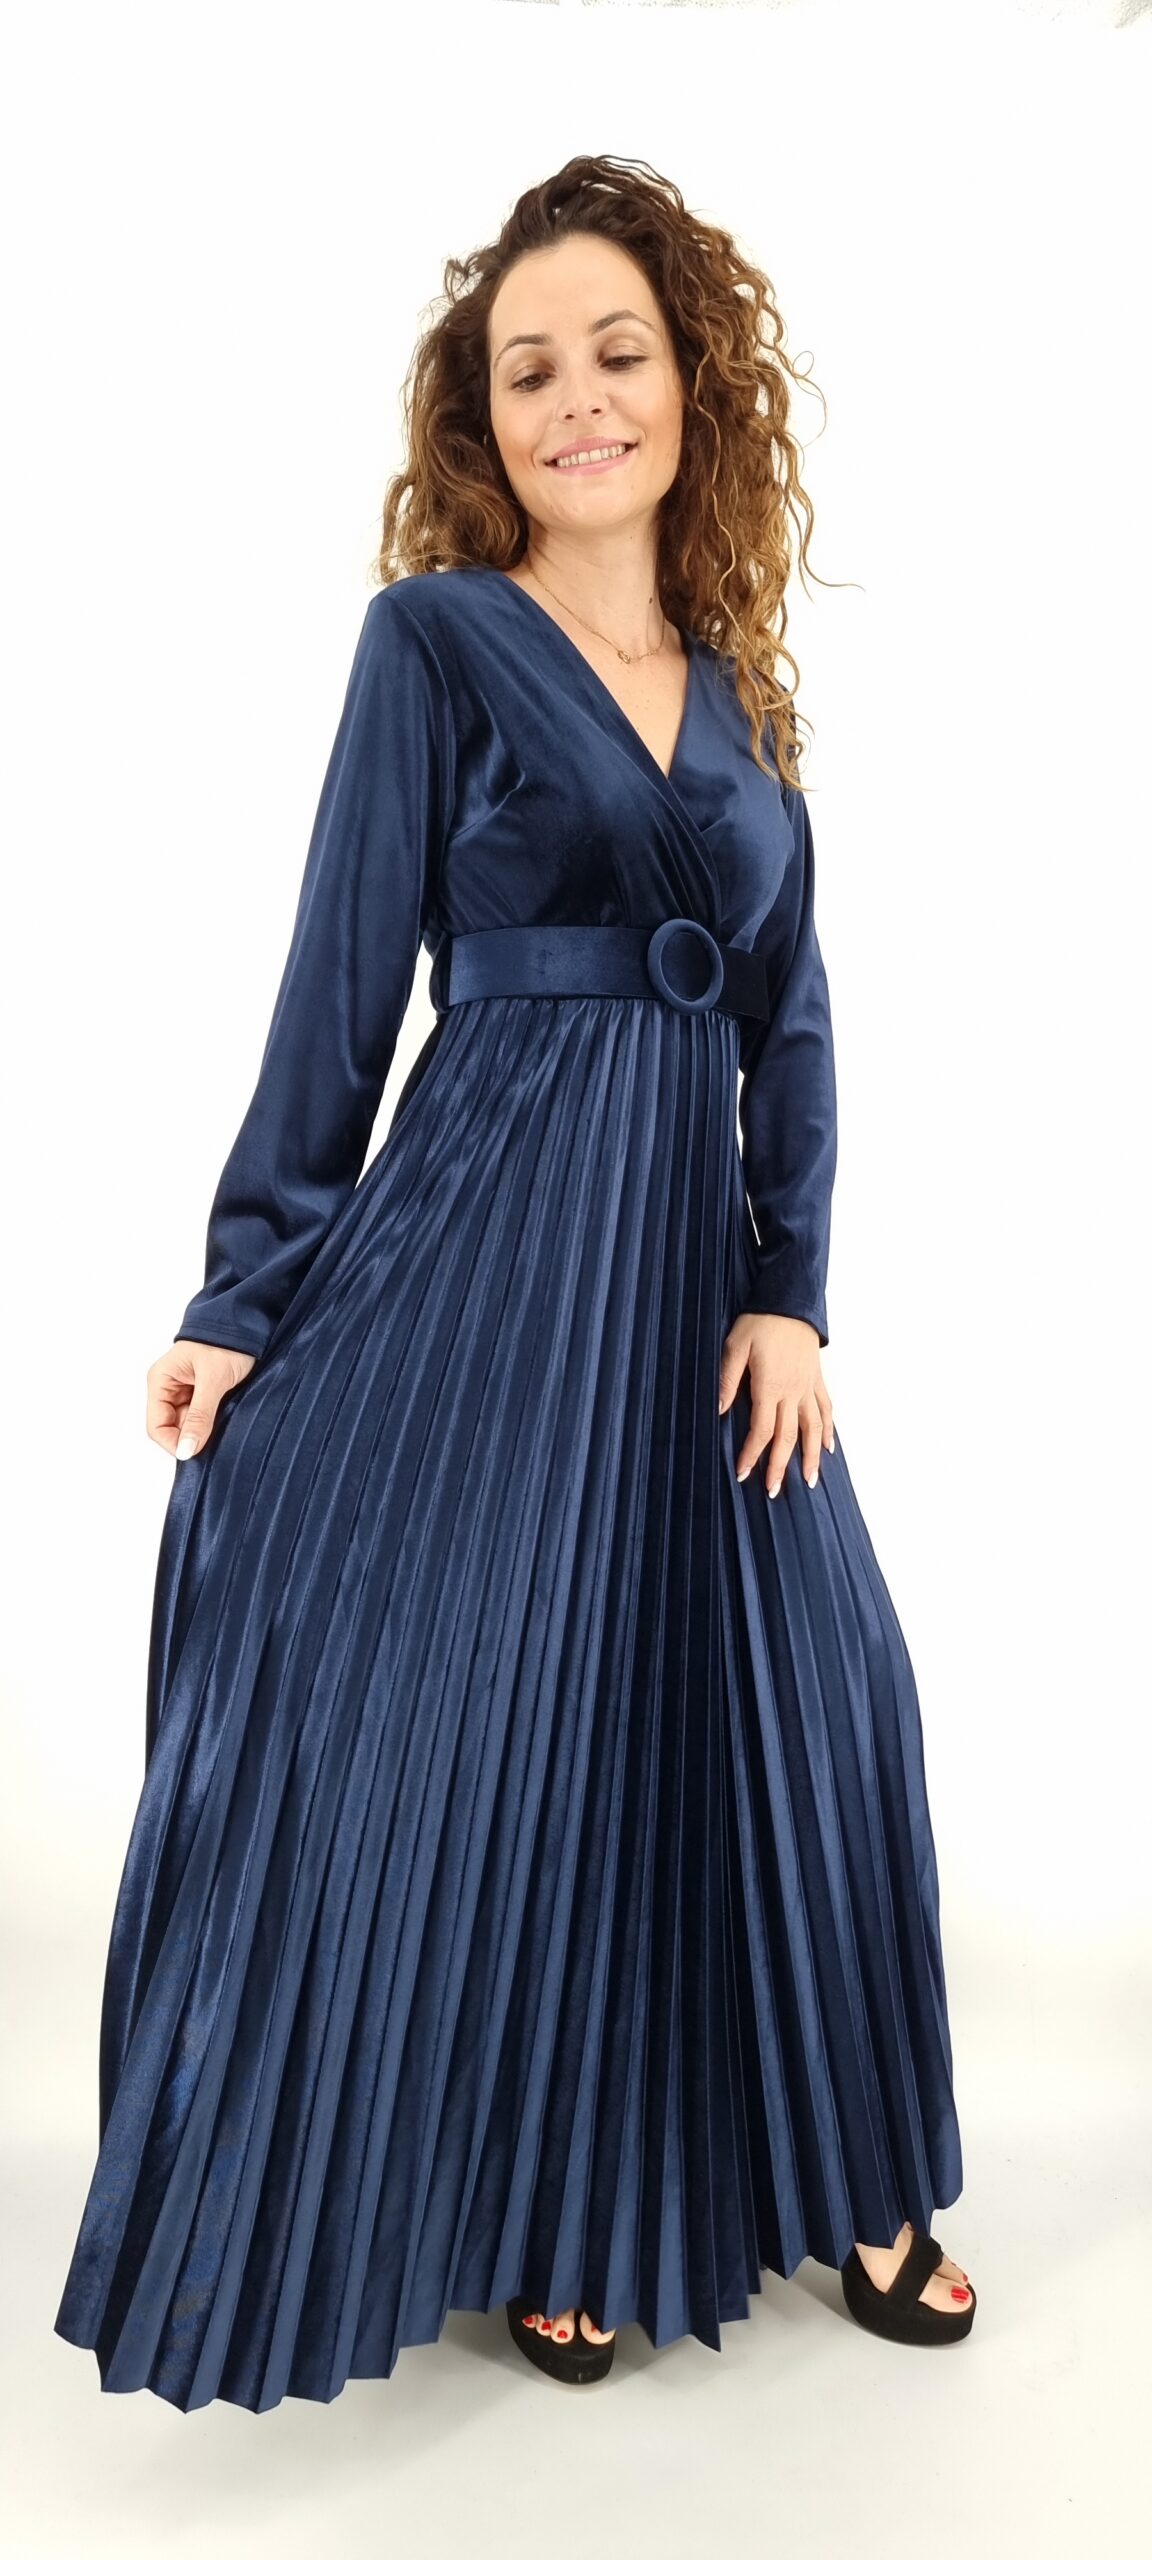 Φόρεμα μακρύ βελουτέ κρουαζέ με ίδια ζώνη και πλισέ τελείωμα μπλε σκούρο